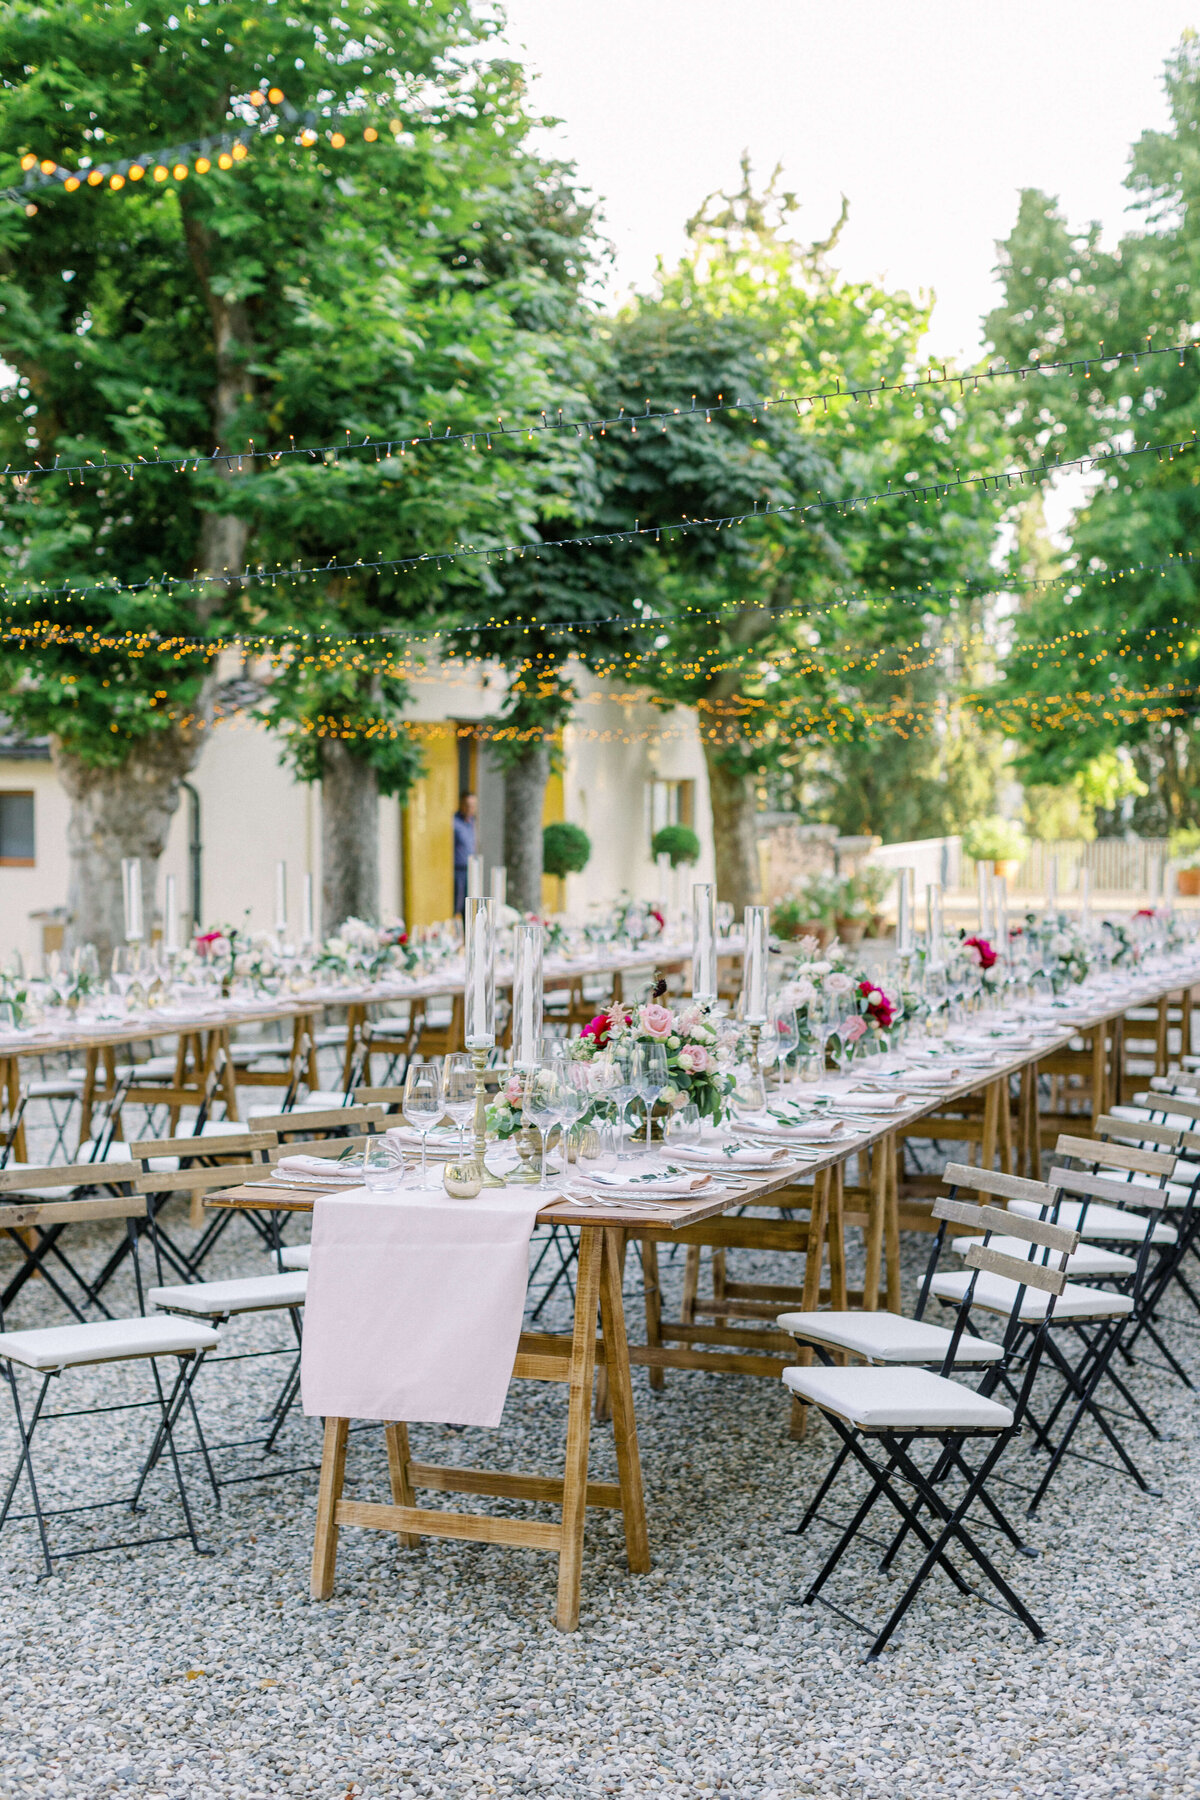 Wedding E&T - Tuscany - Italy 2019 36